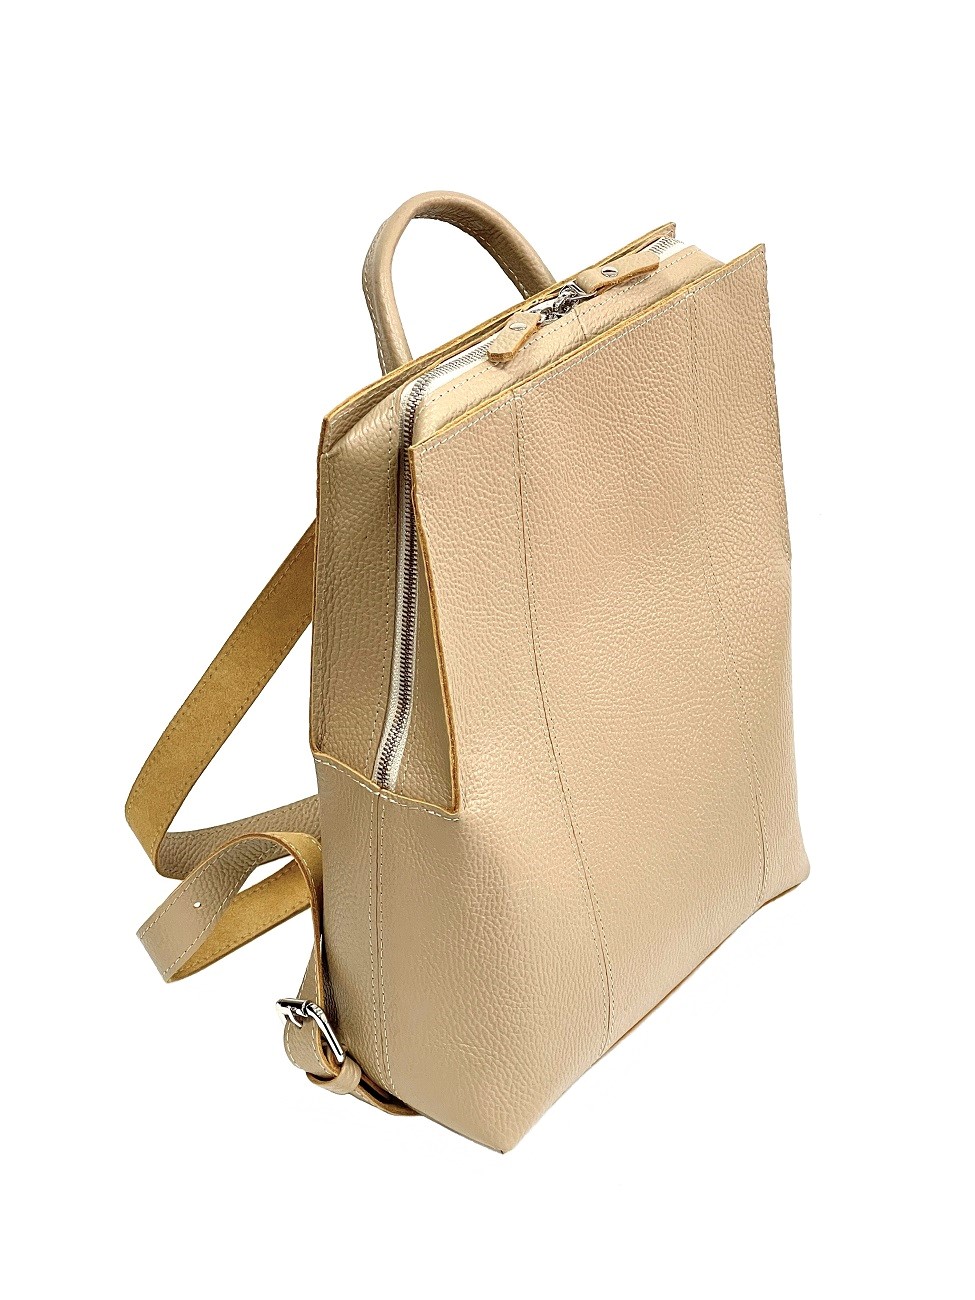 Женский рюкзак из натуральной кожи бежевый B014 beige grain